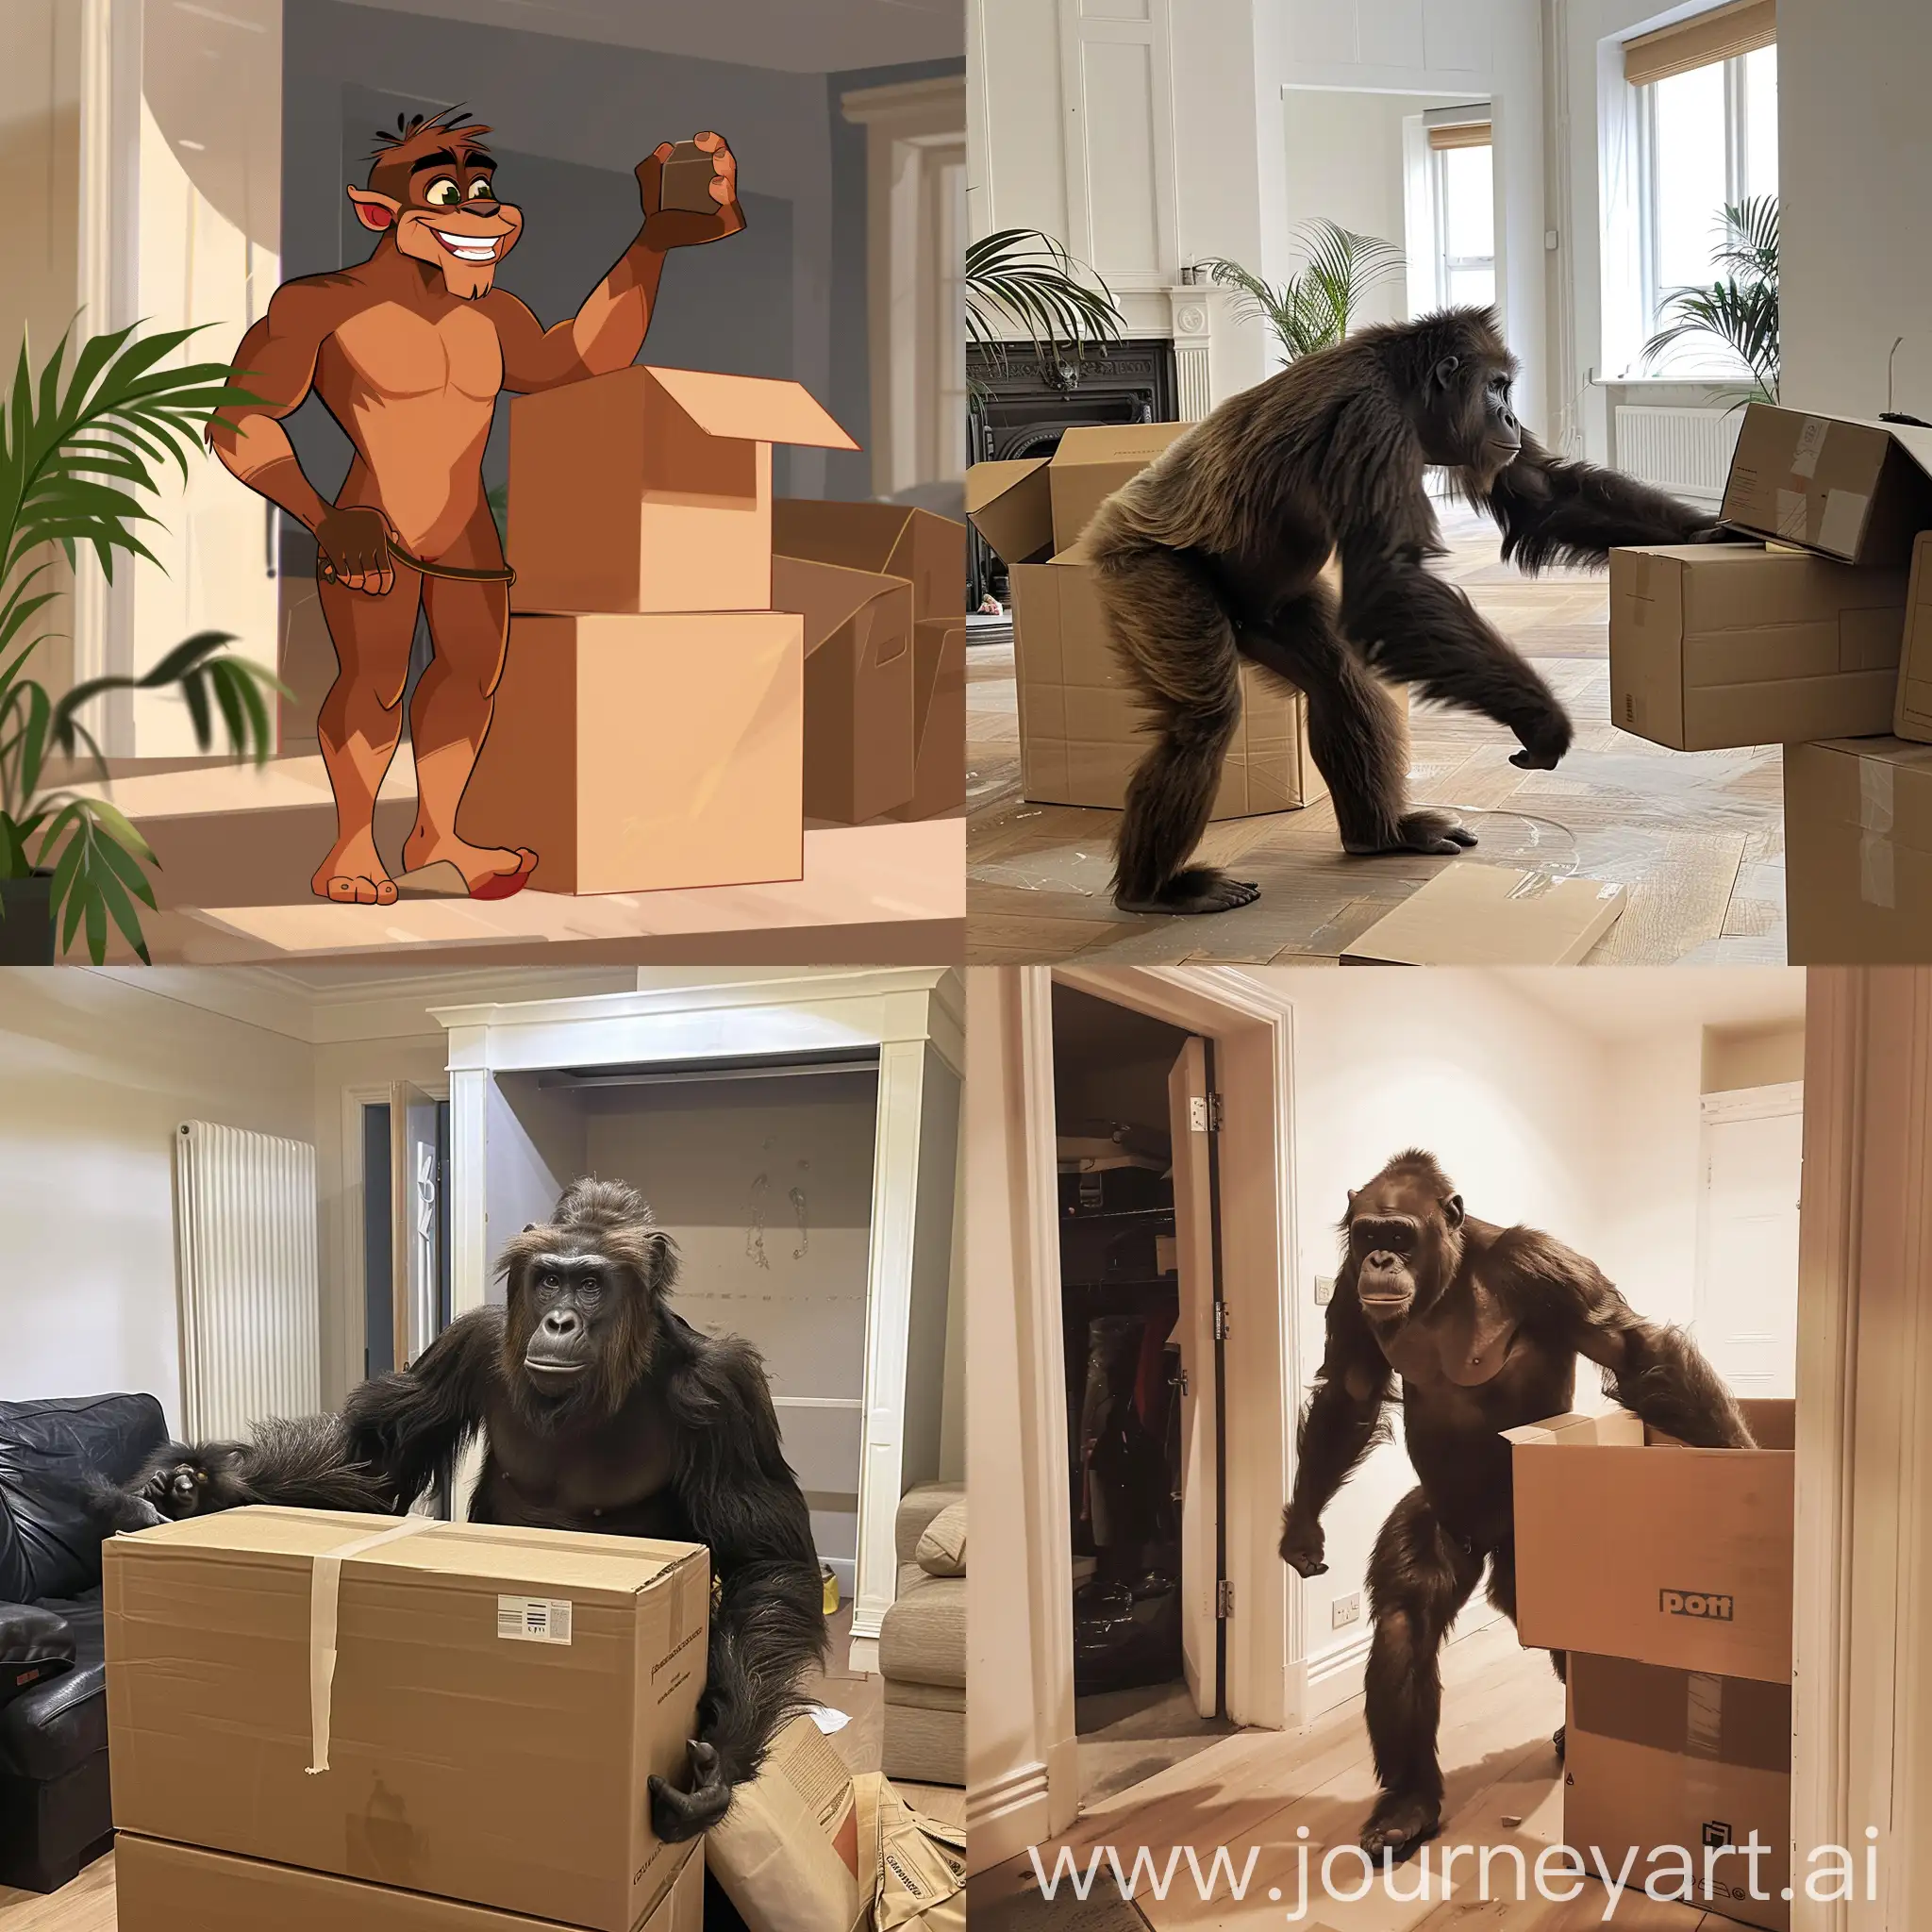 Tarzan enjoying moving his stuff into New flat